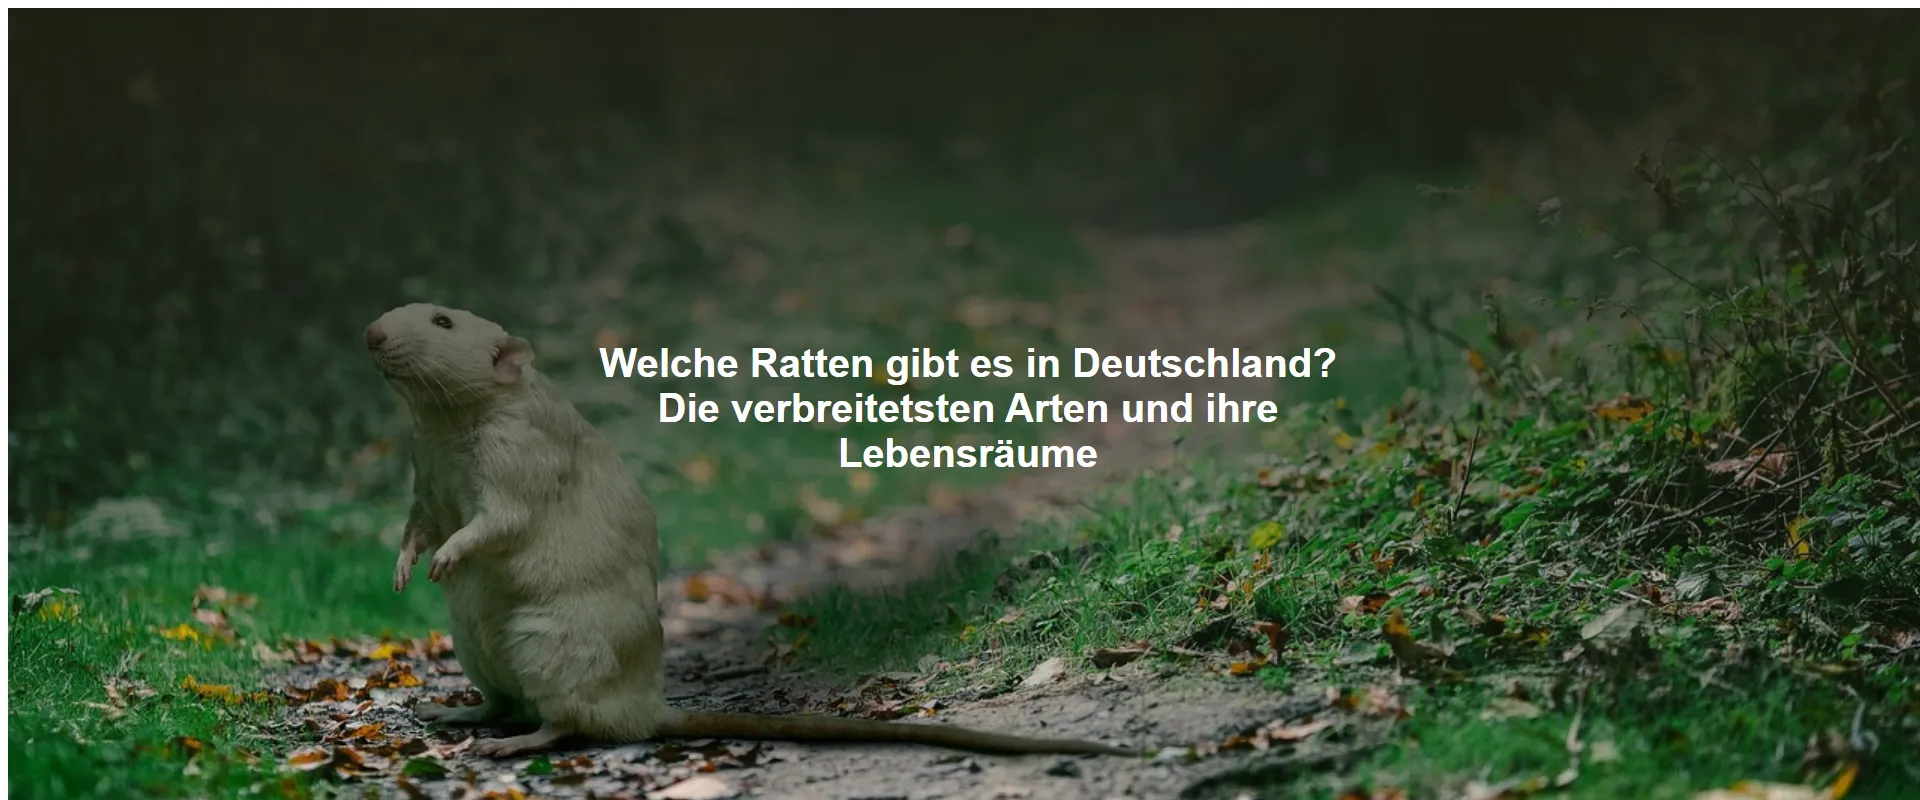 Welche Ratten gibt es in Deutschland? Die verbreitetsten Arten und ihre Lebensräume